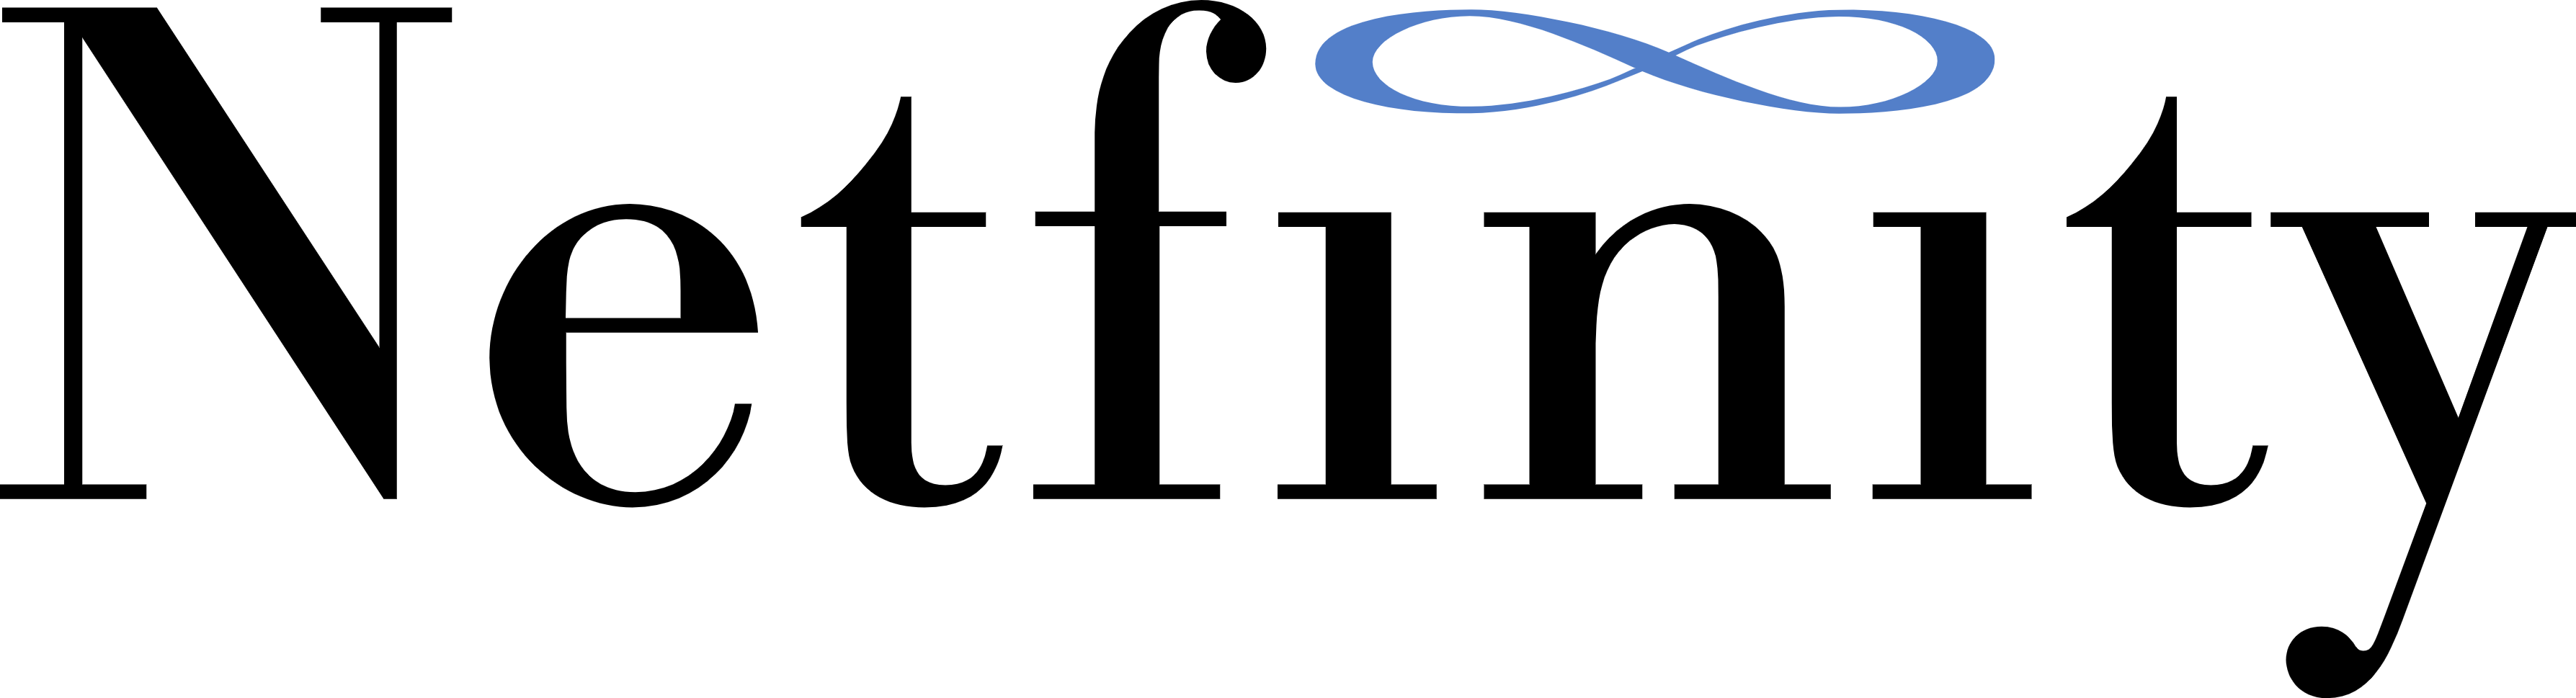 ibm netfinity 2 logo